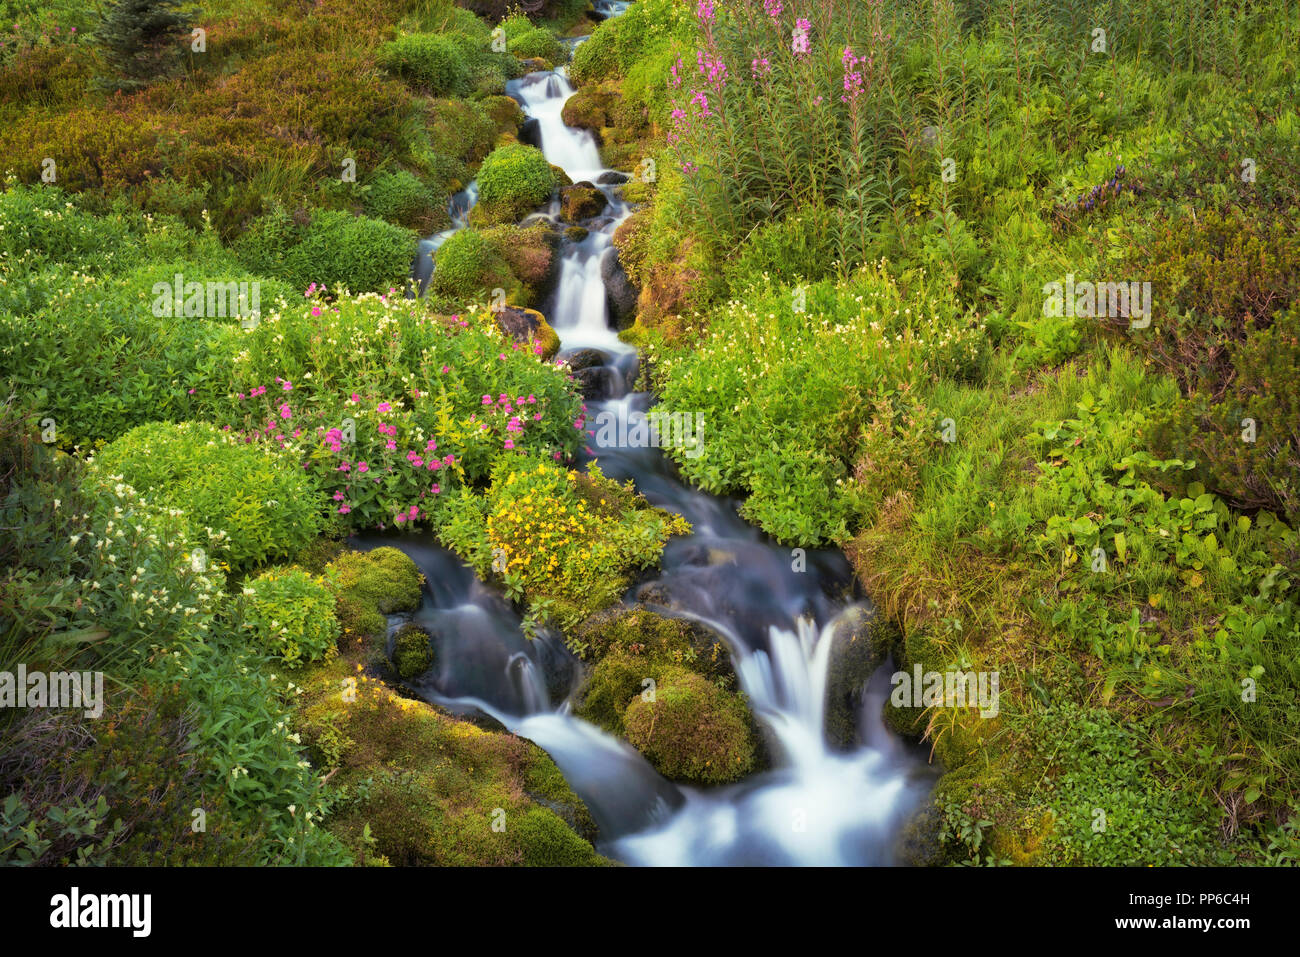 Tarda estate fiori selvatici fioriscono lungo questo piccolo ruscello che scorre nel fiume paradiso a Washington Mt Rainier National Park. Foto Stock